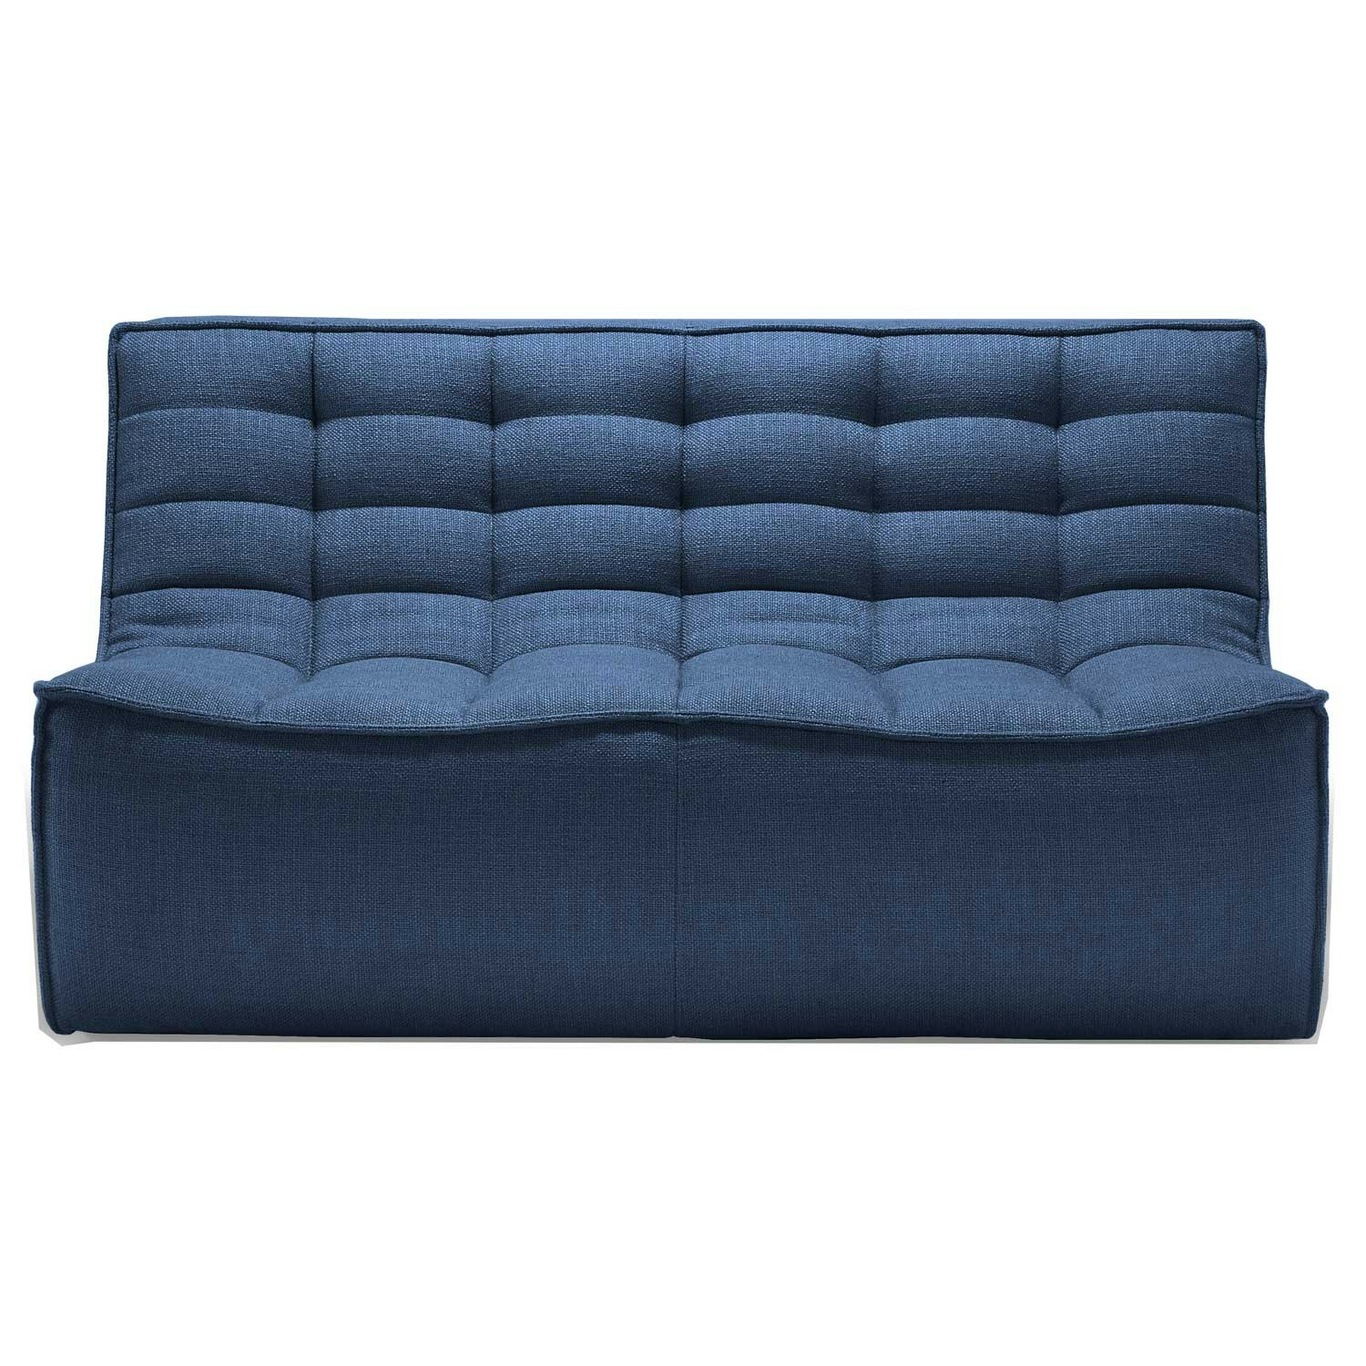 N701 Sofa, Blau 2-Sitzer